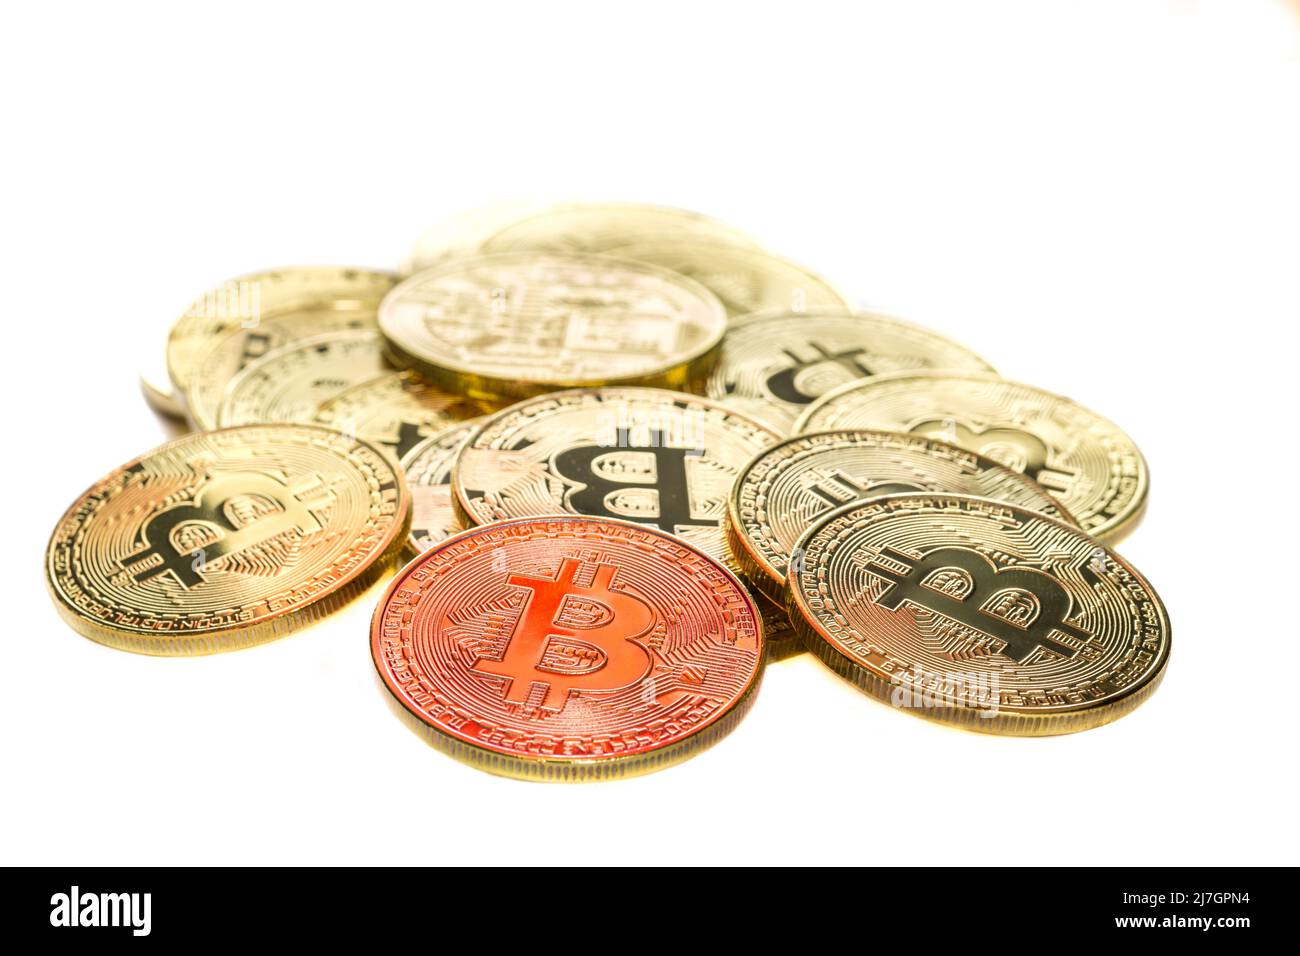 Bitcoin criptomoneda de cerca con una moneda roja que significa una caída del mercado bajista en el mercado bajista de los precios de negociación Foto de stock